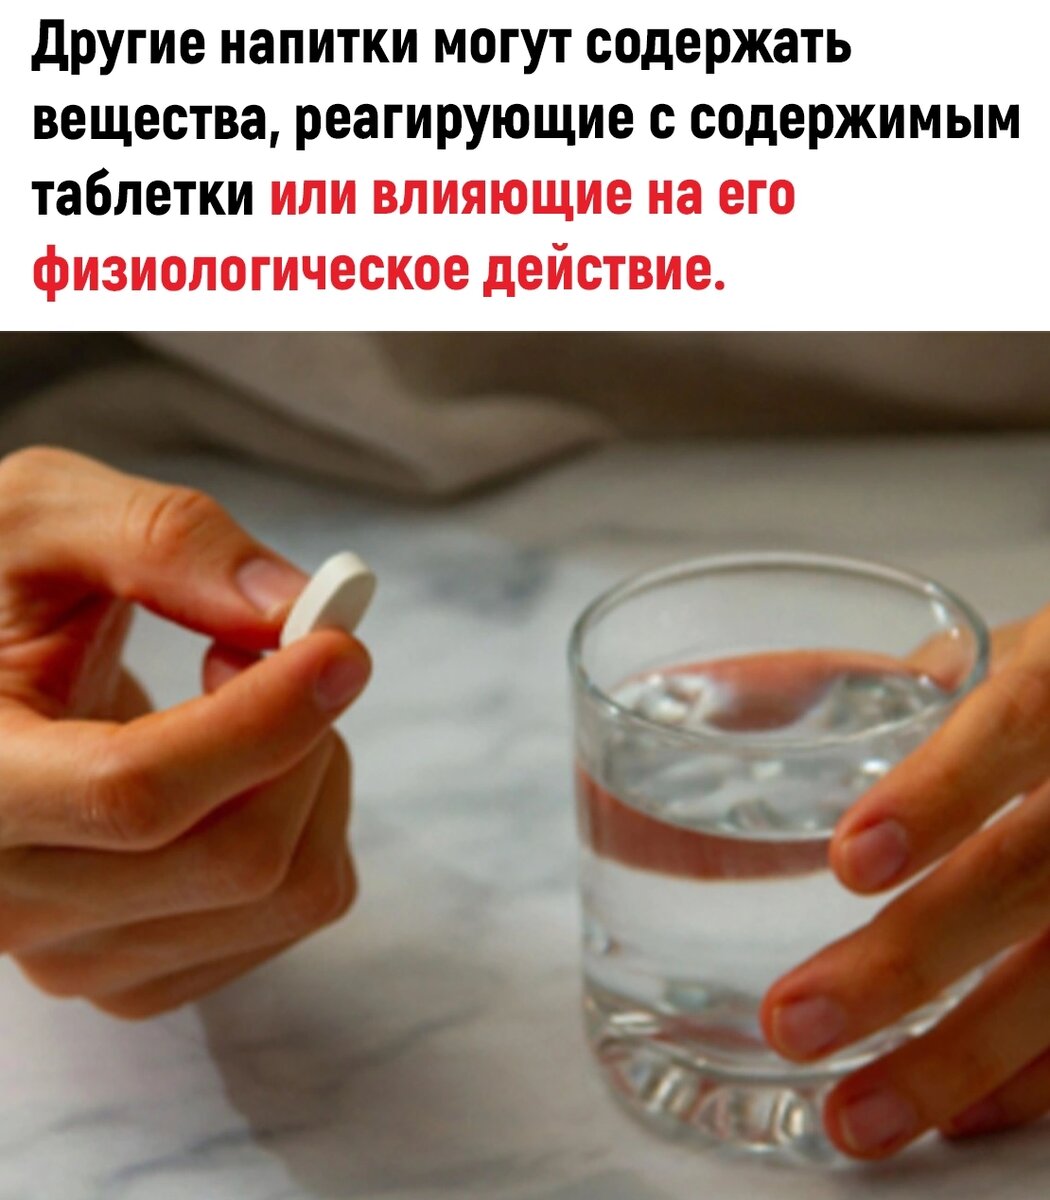 Почему таблетки запивают водой. Почему нужно запивать таблетки водой. Почему лекарство надо запивать водой. Почему таблетки надо запивать водой. Почему таблетки нужно запивать именно водой.